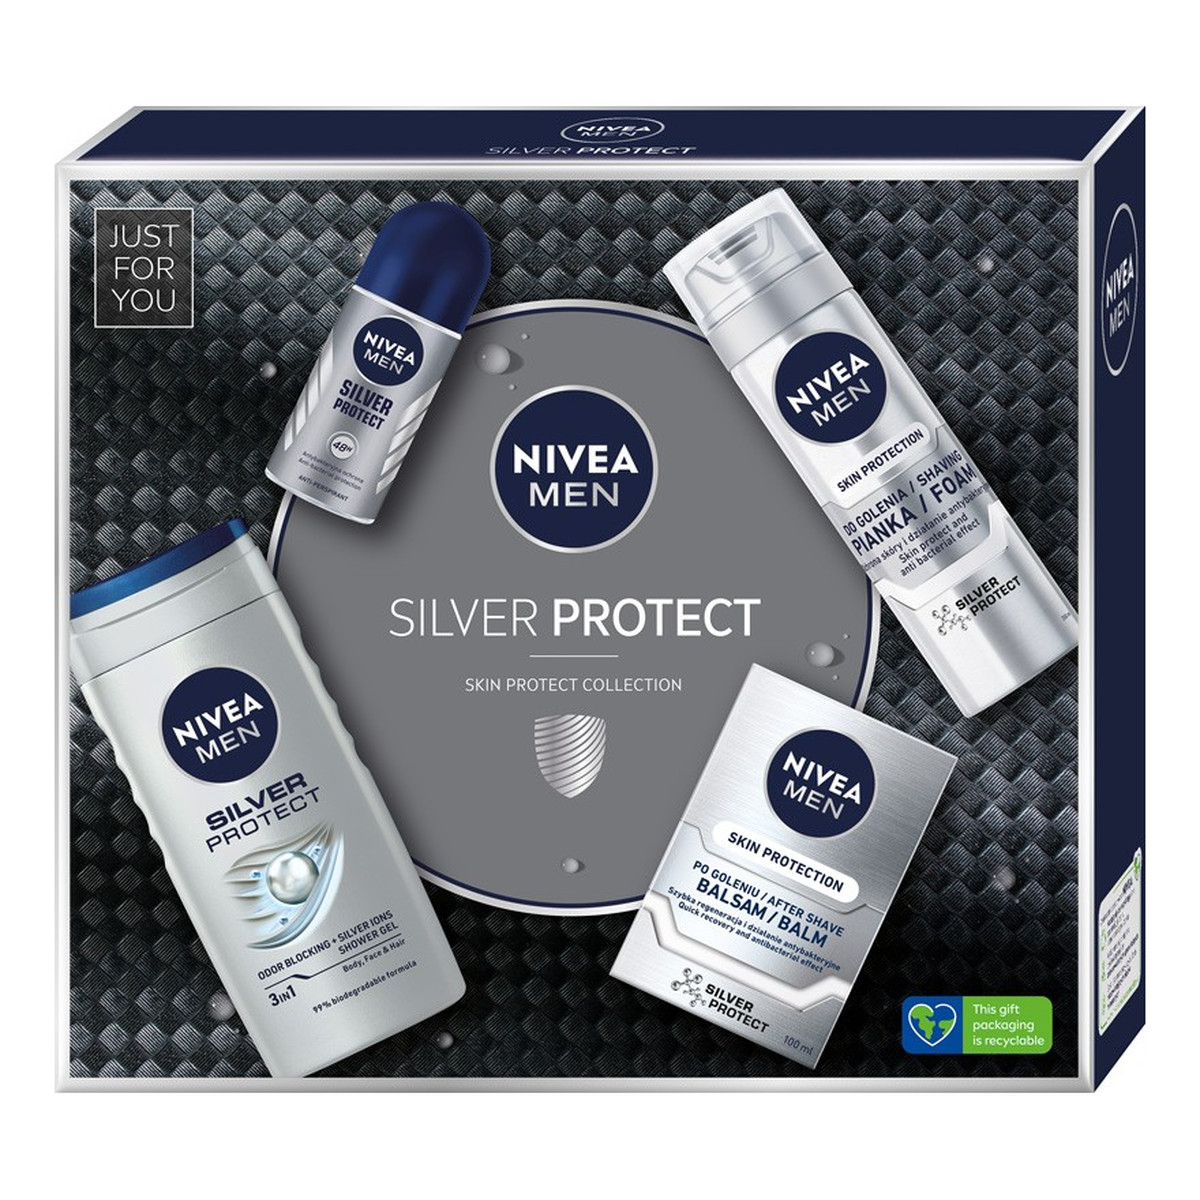 Nivea Men Zestaw prezentowy Silver Protect żel pod prysznic + pianka do golenia + balsam po goleniu + deo roll-on